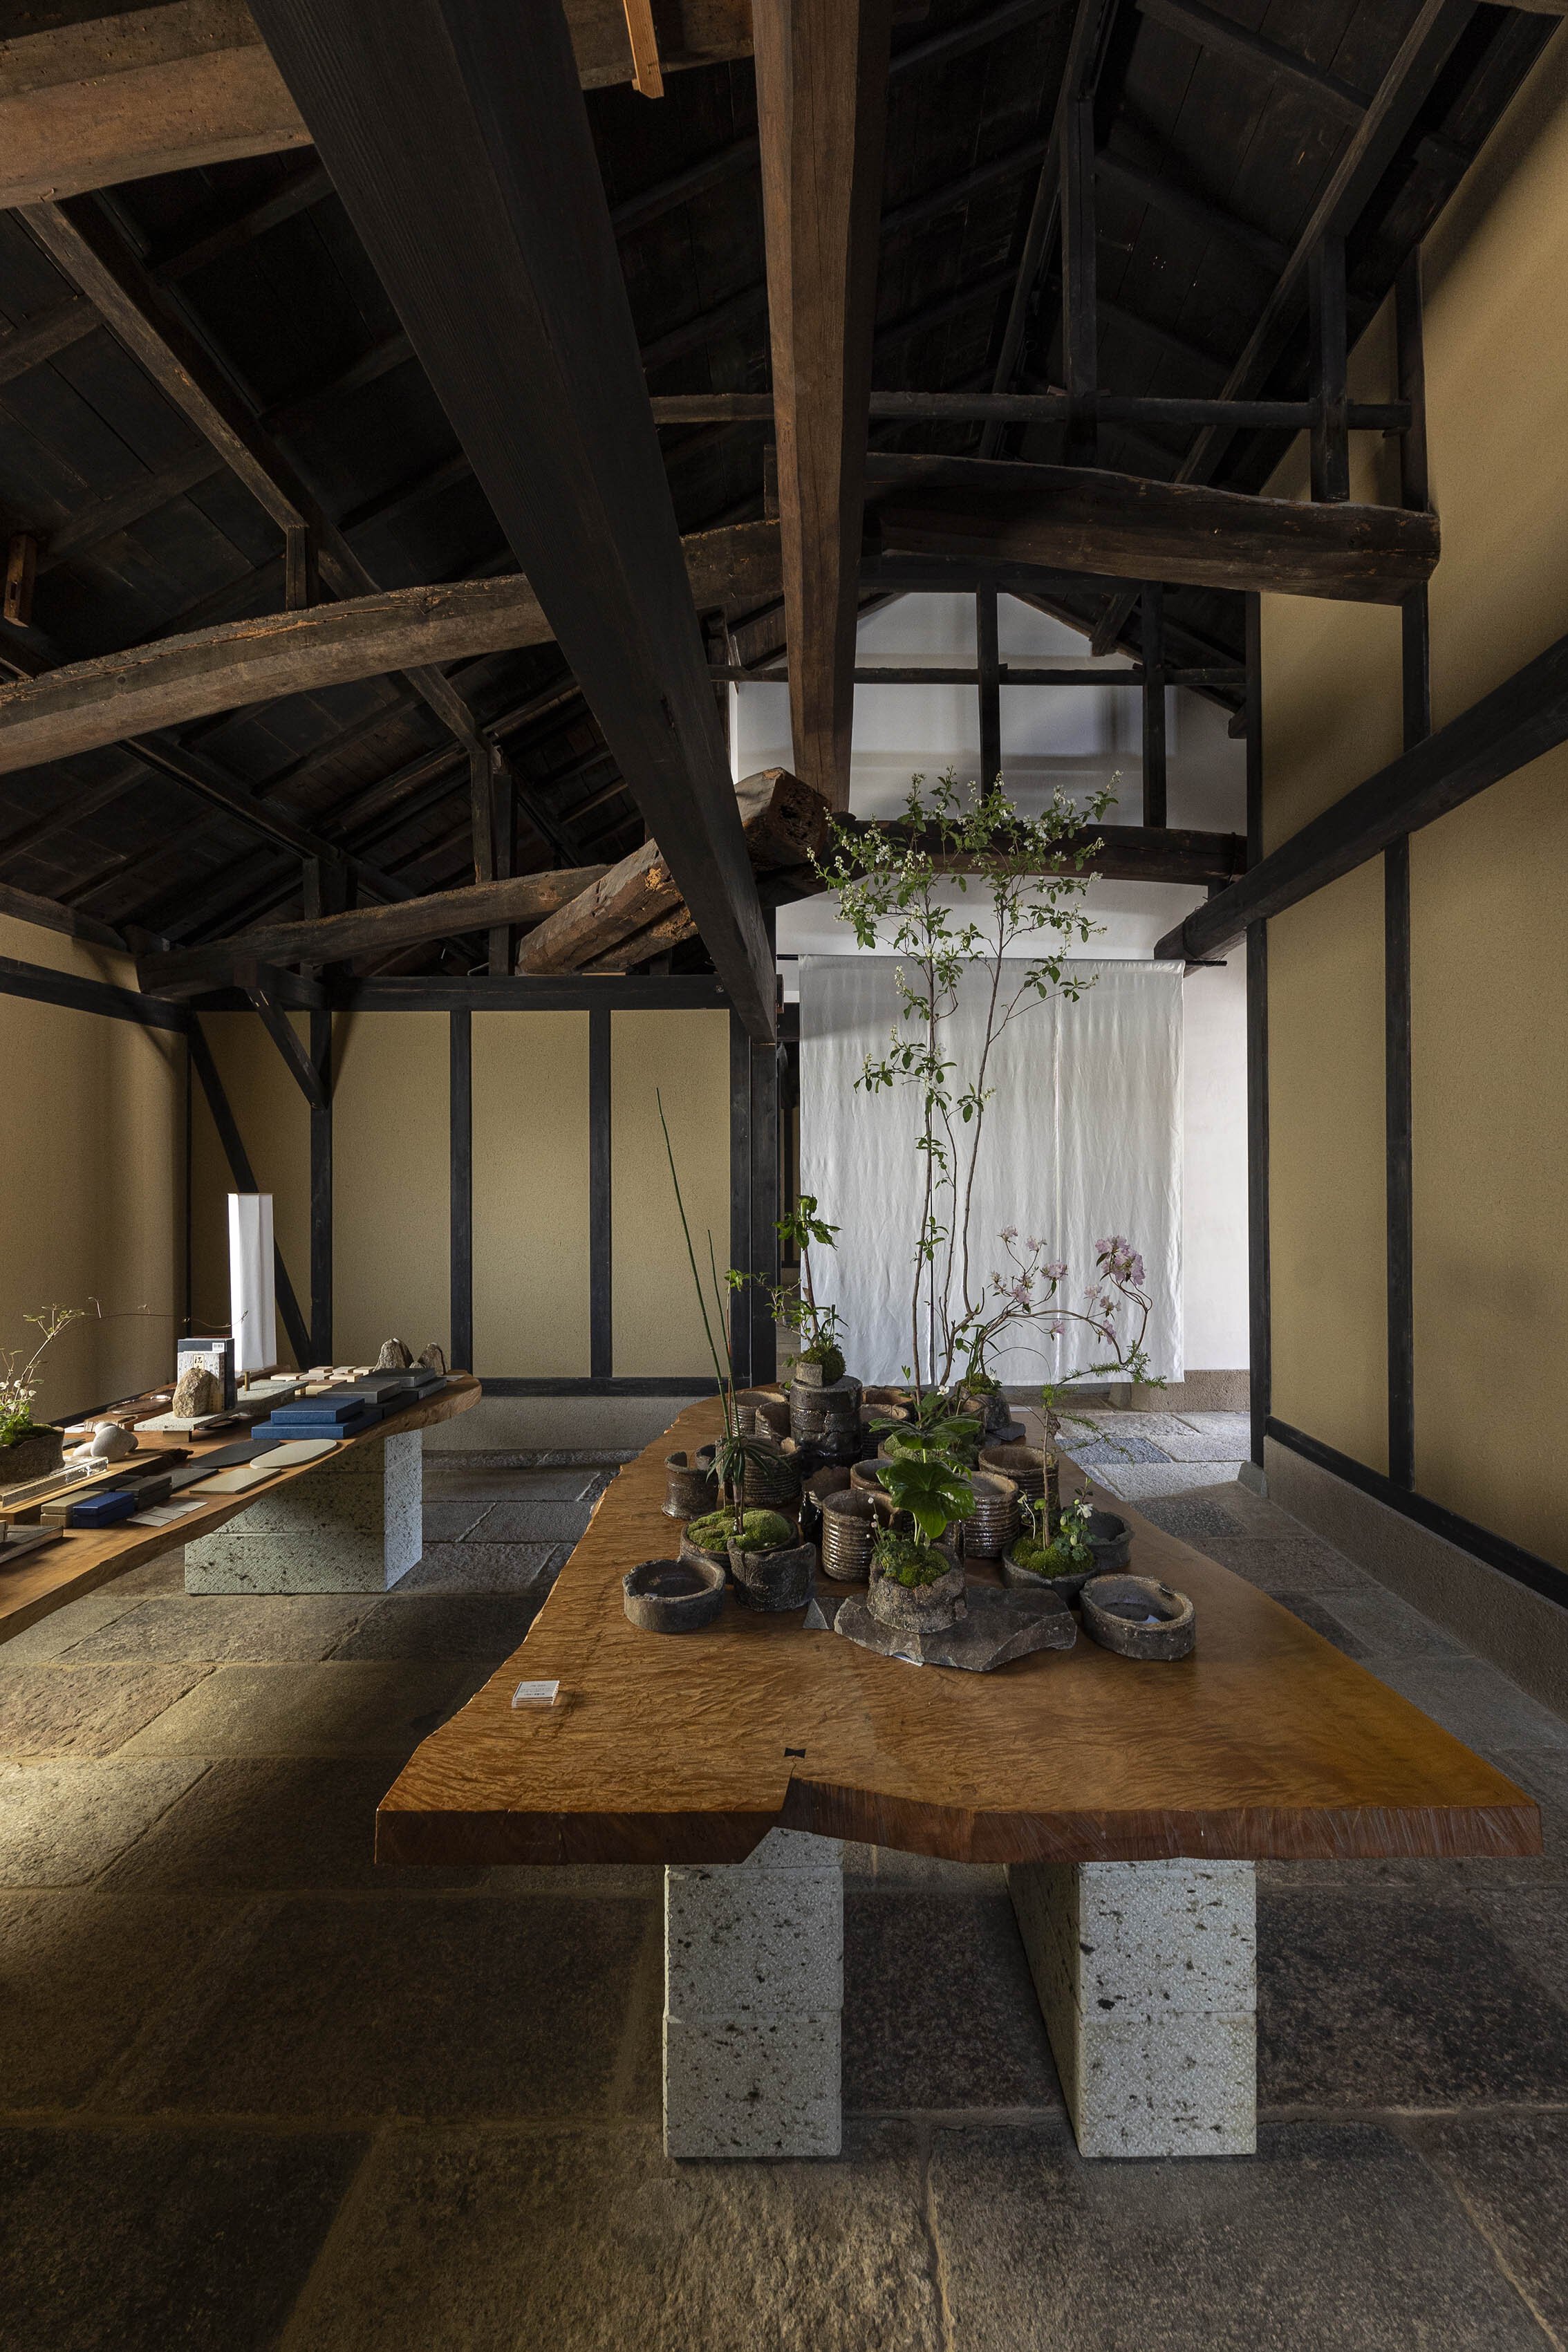  杉本博司と榊田倫之が率いる新素材研究所がデザインを手掛けた小田垣商店本店のショップ。ディスプレイテーブルの天板は栃 